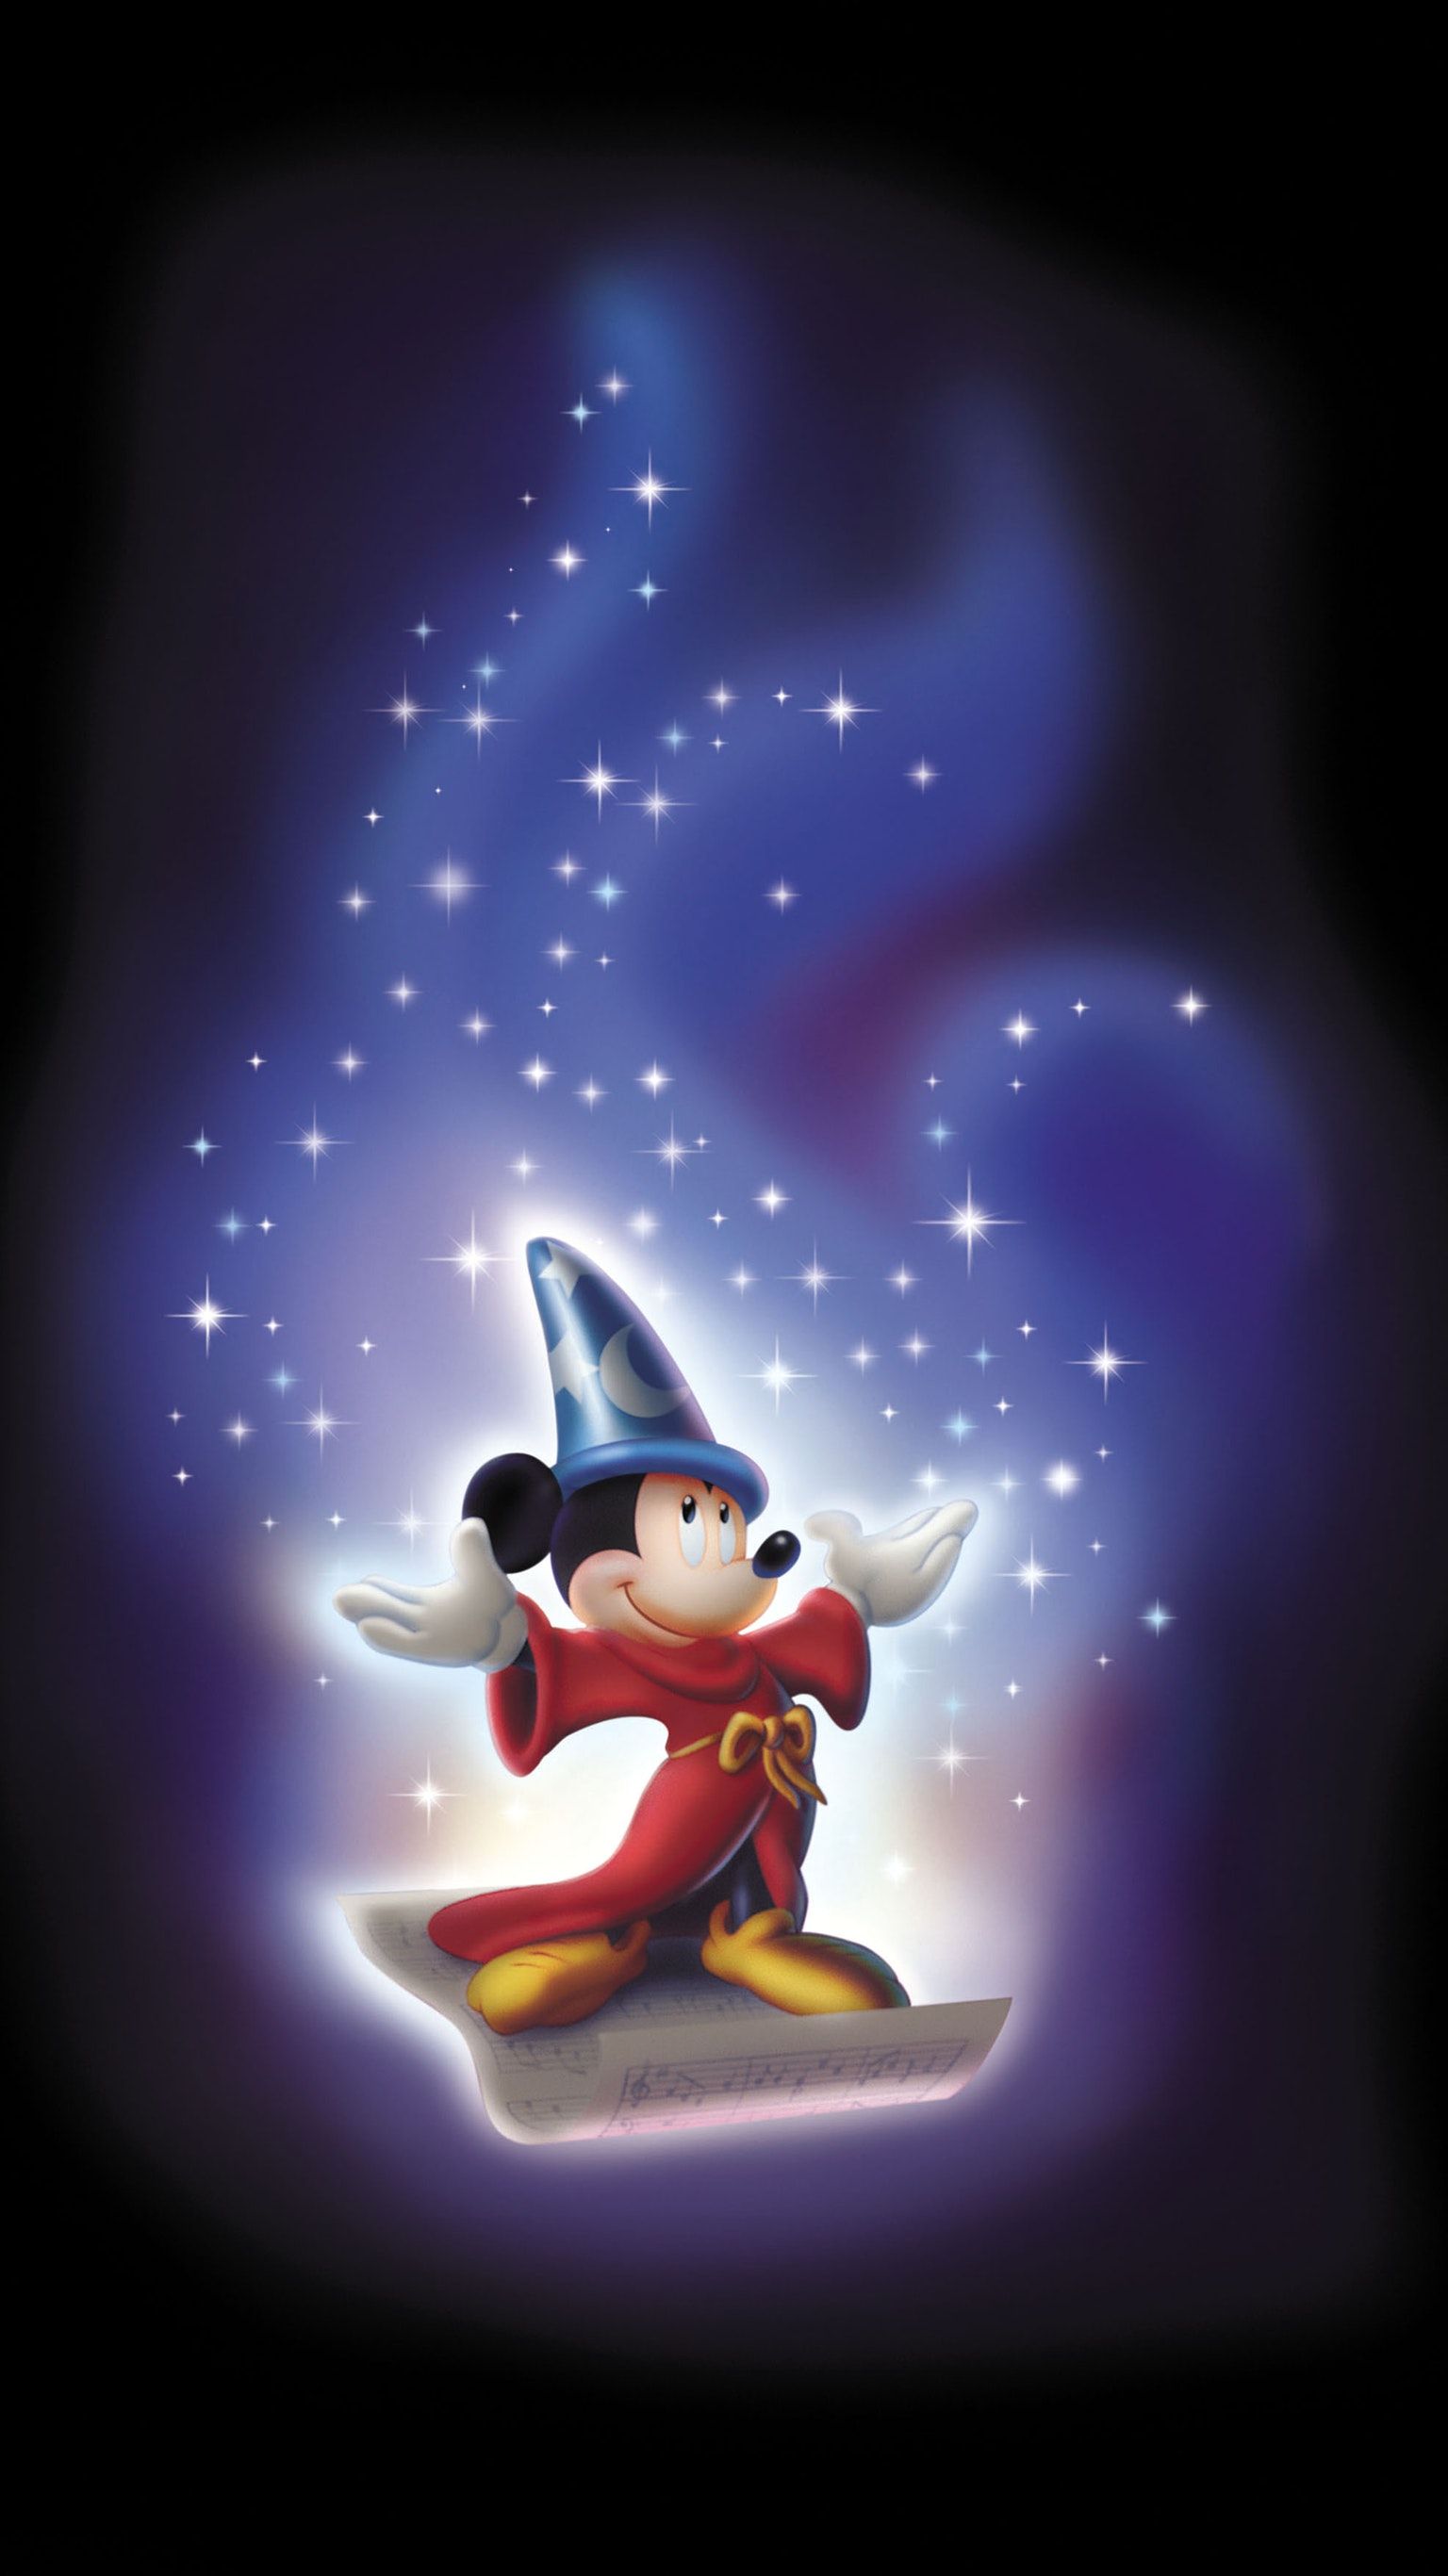 Sorcerer Mickey Wallpaper - Mickey Mouse As Merlin - HD Wallpaper 